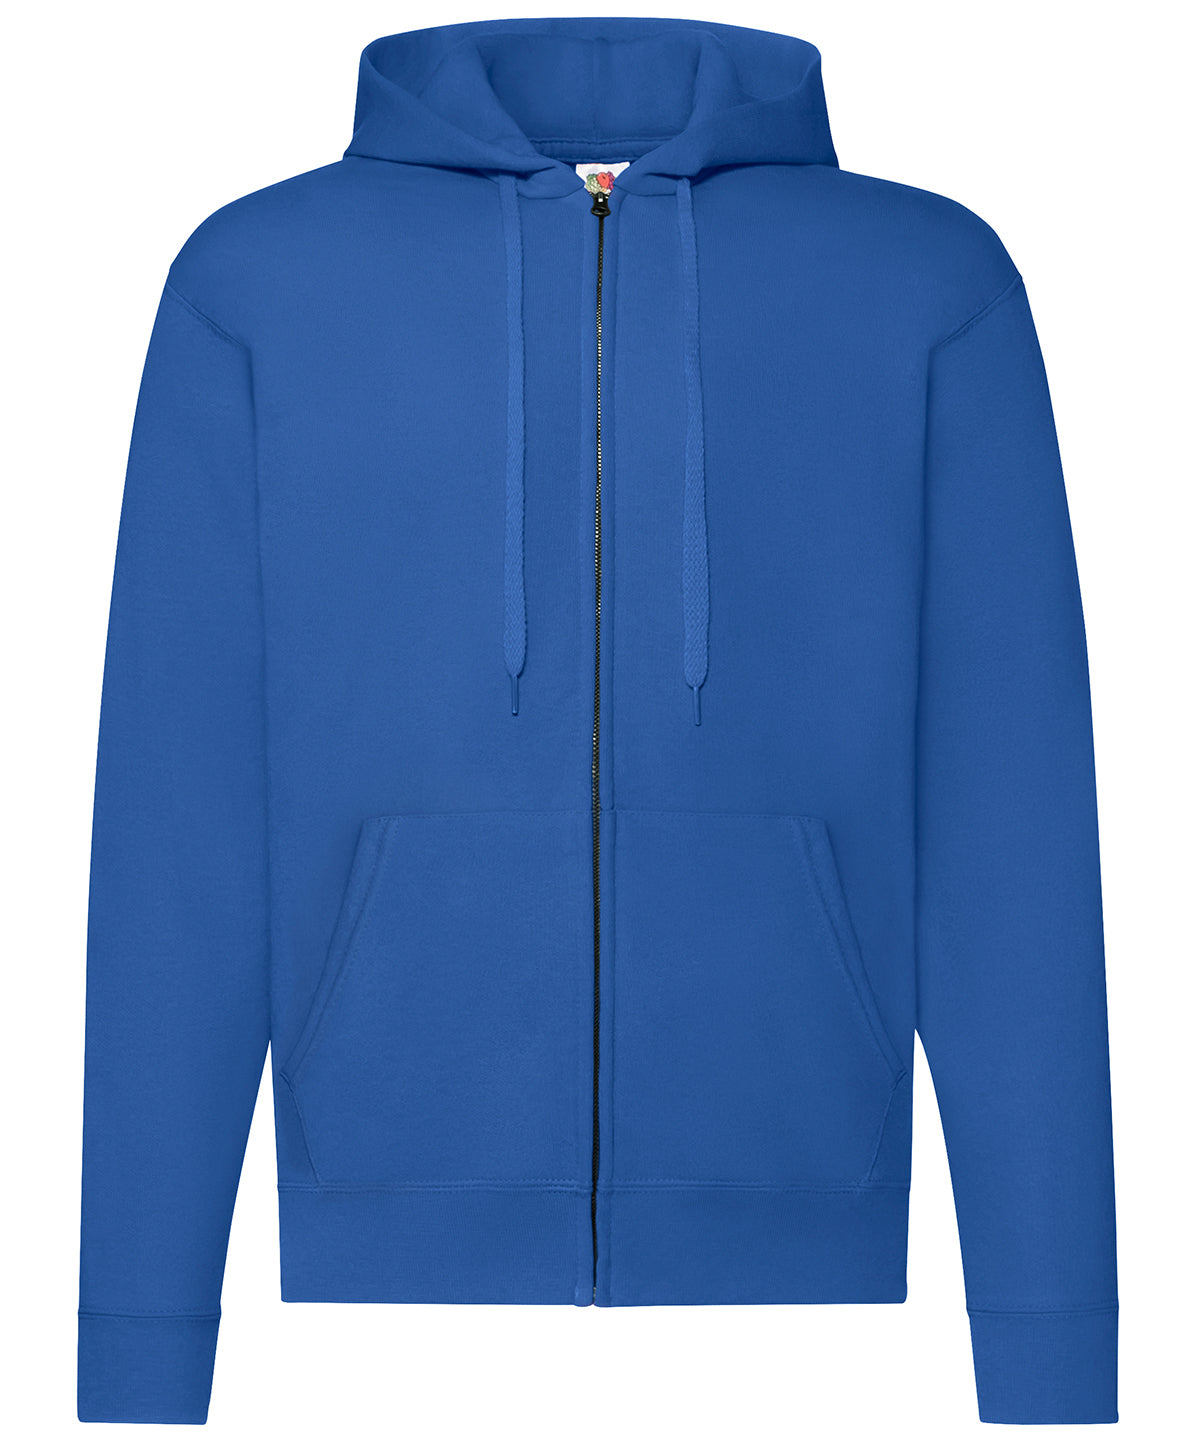 Personalised Hoodies - Black Fruit of the Loom Classic 80/20 hooded sweatshirt jacket